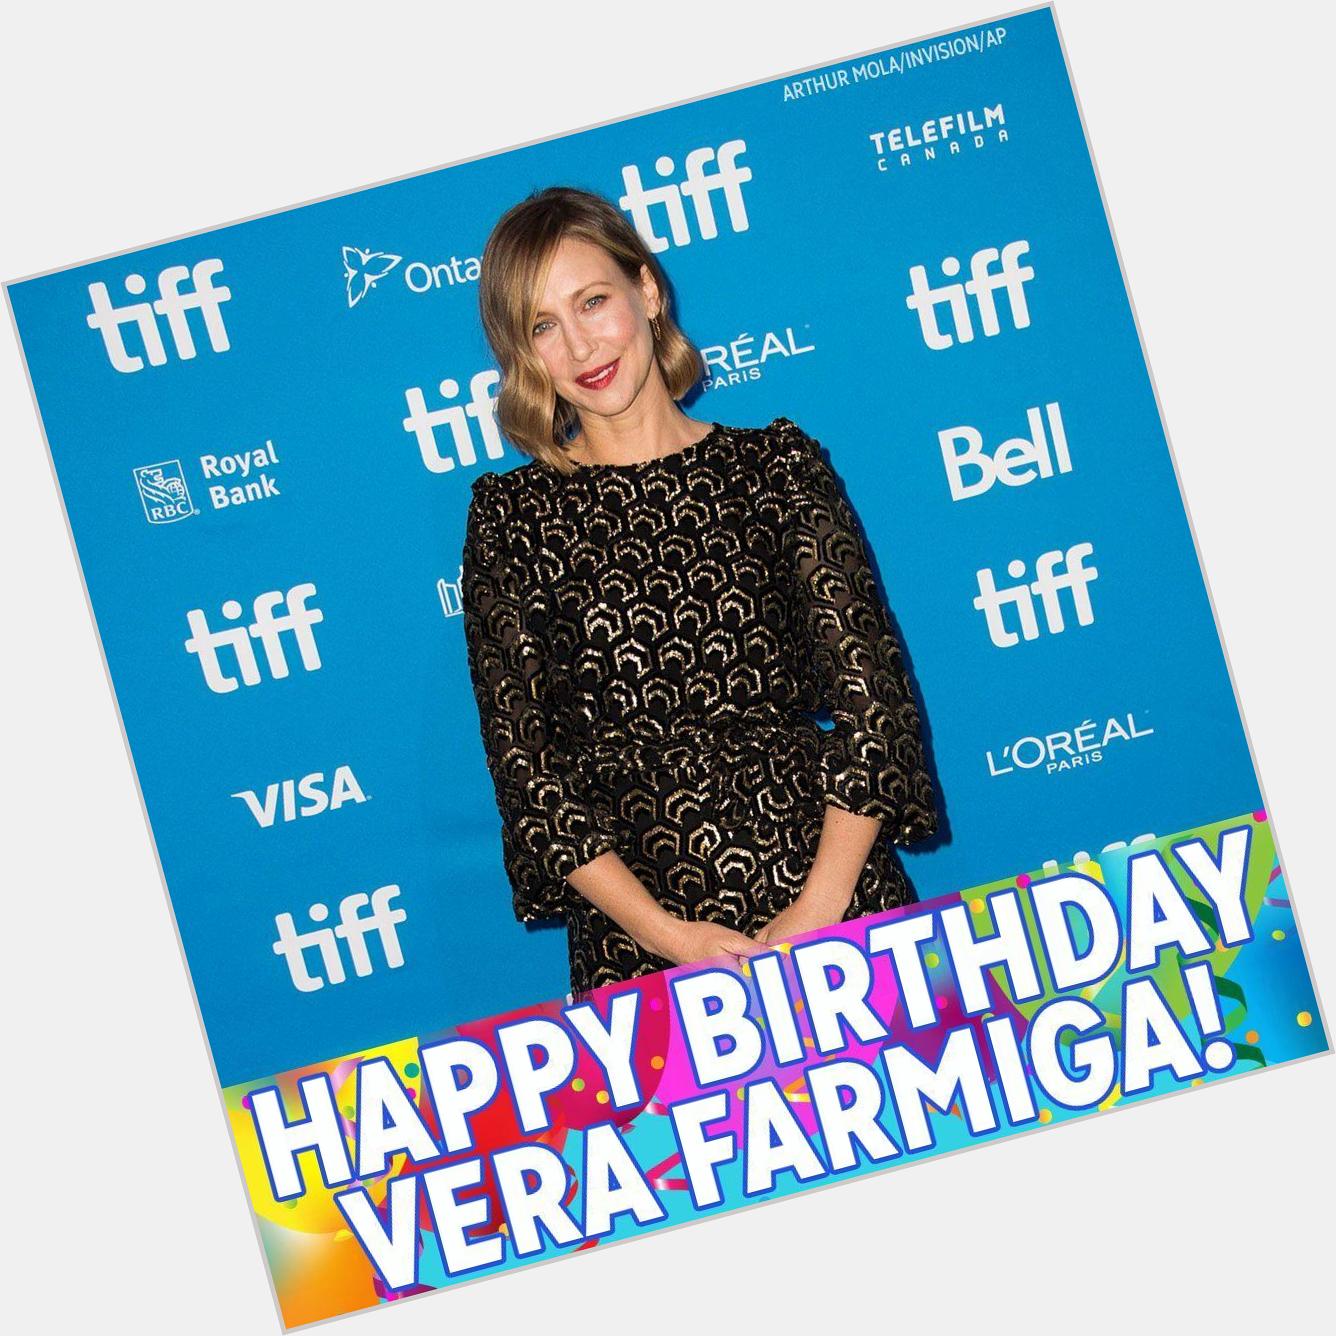 Wishing a very Happy 44th Birthday to actress Vera Farmiga! 